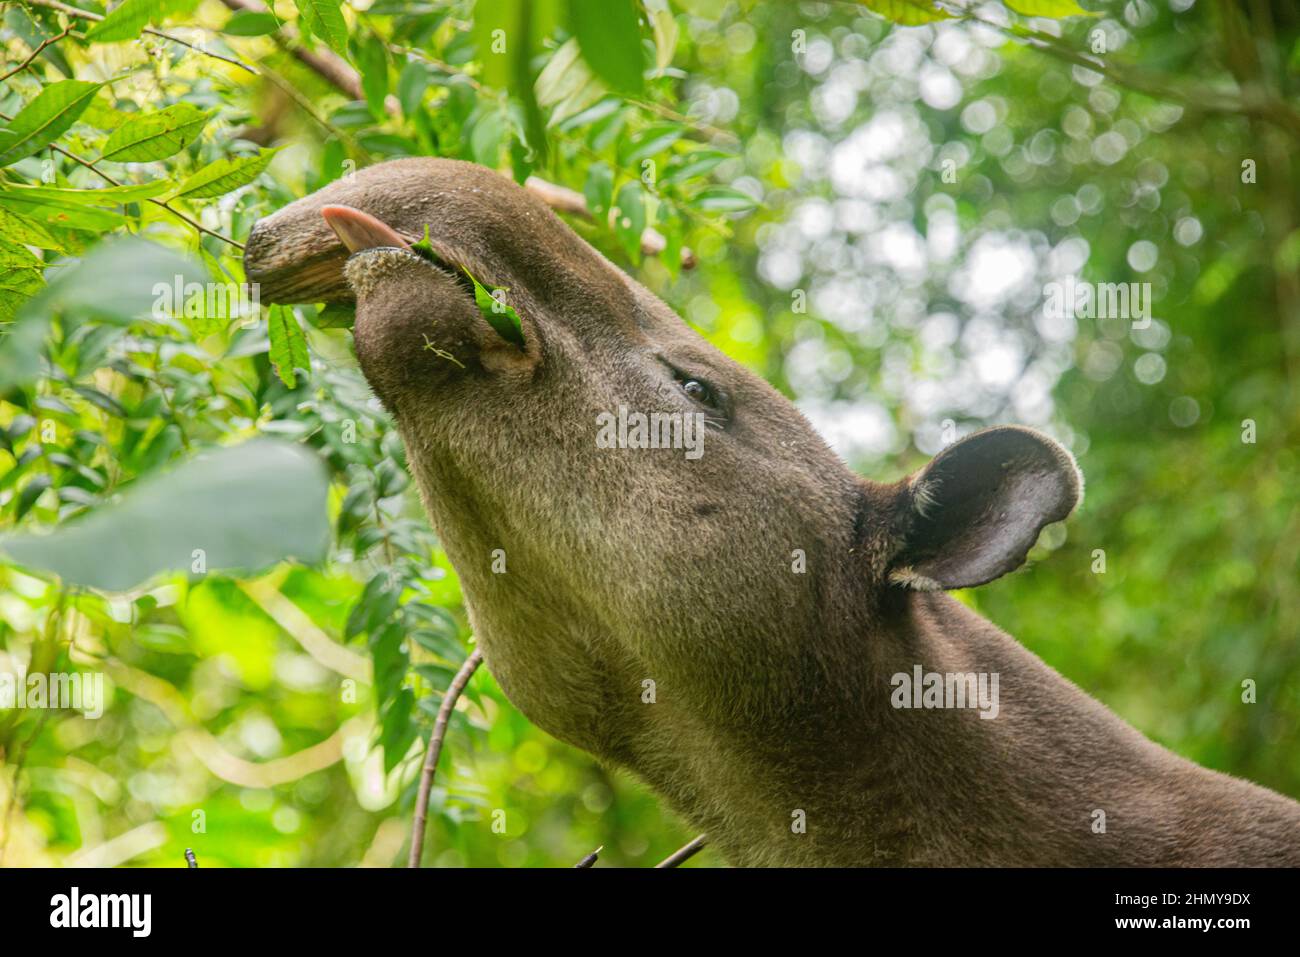 Baird's tapir (Tapirus bairdii), Tenorio Volcano National Park, Guanacaste, Costa Rica Stock Photo